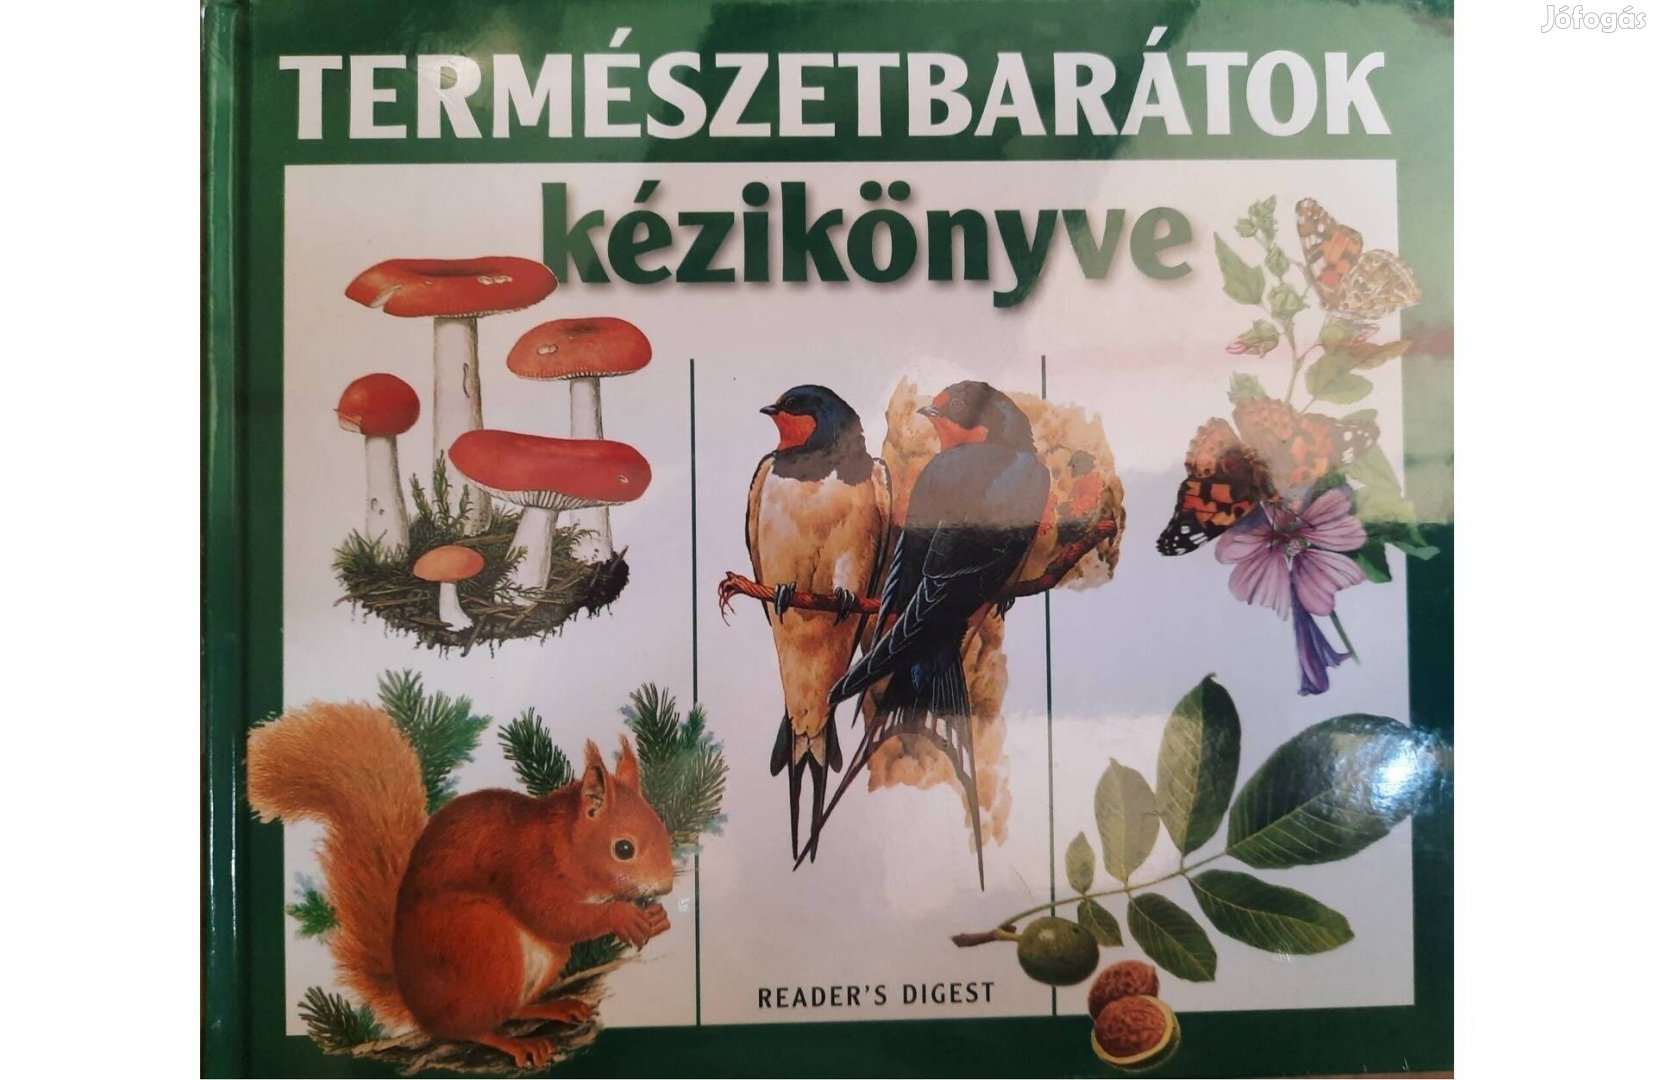 Természetbarátok kézikönyve című könyv eladó